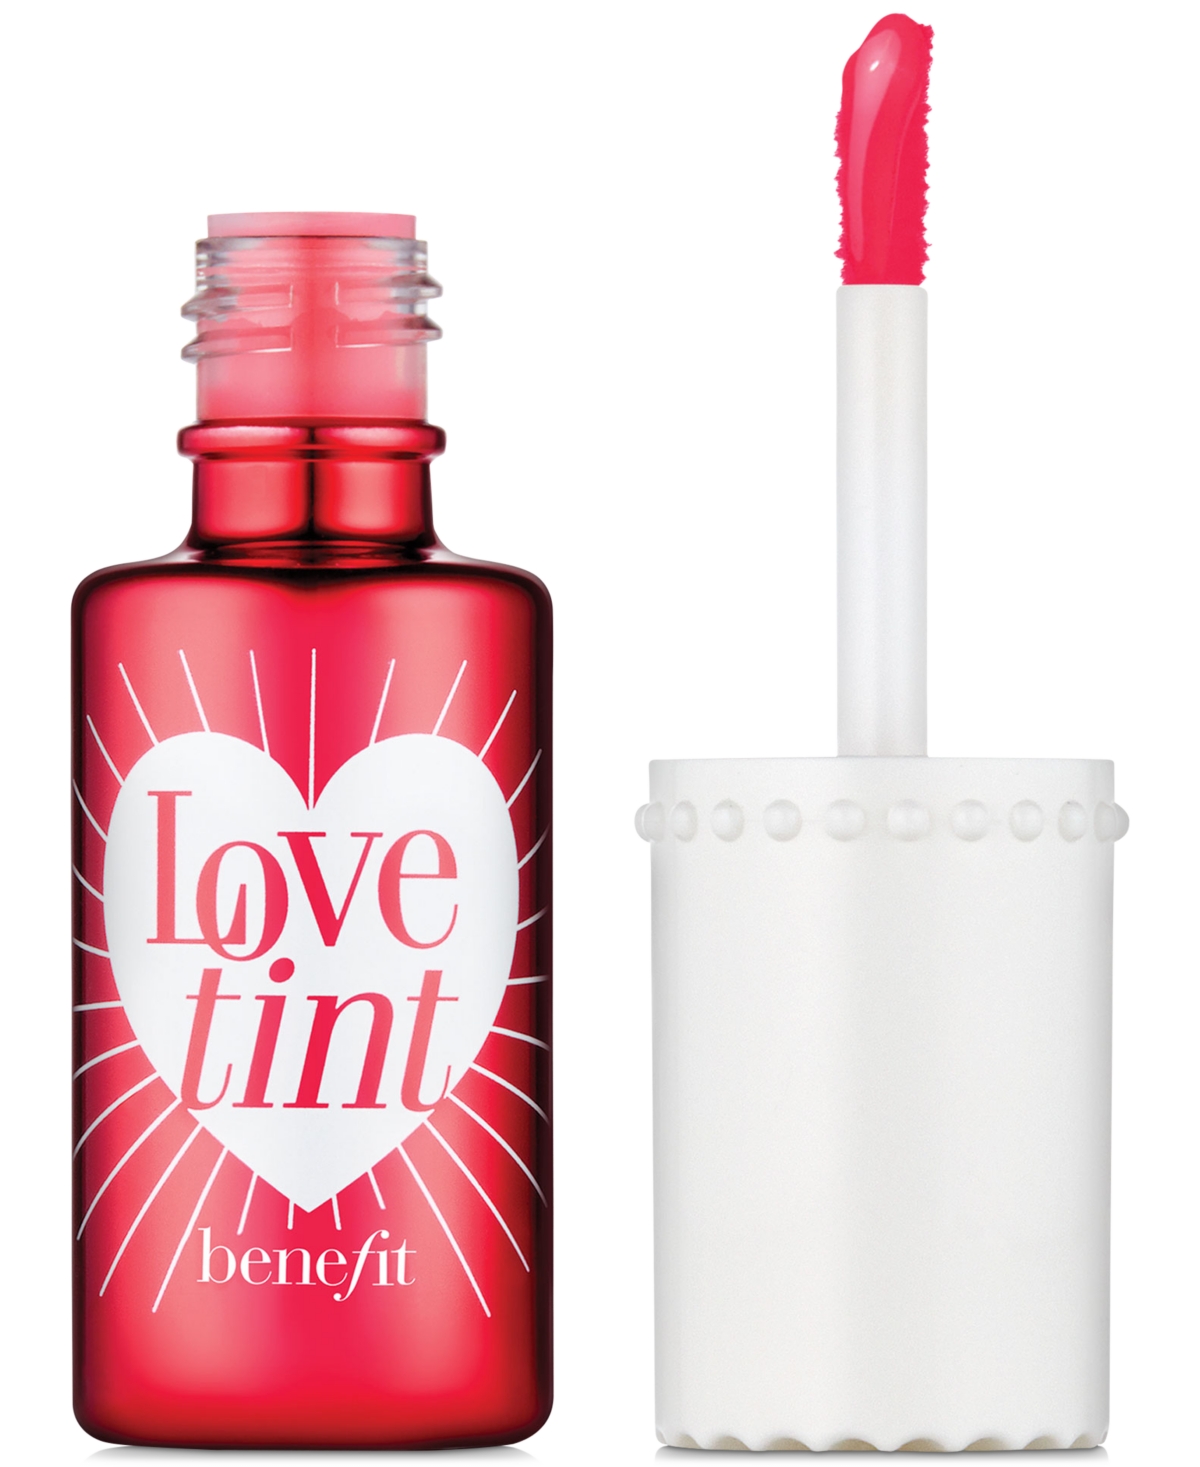 Benefit Cosmetics Liquid Lip Blush & Cheek Tint, 0.2 oz In Lovetint - Fiery Red-tinted